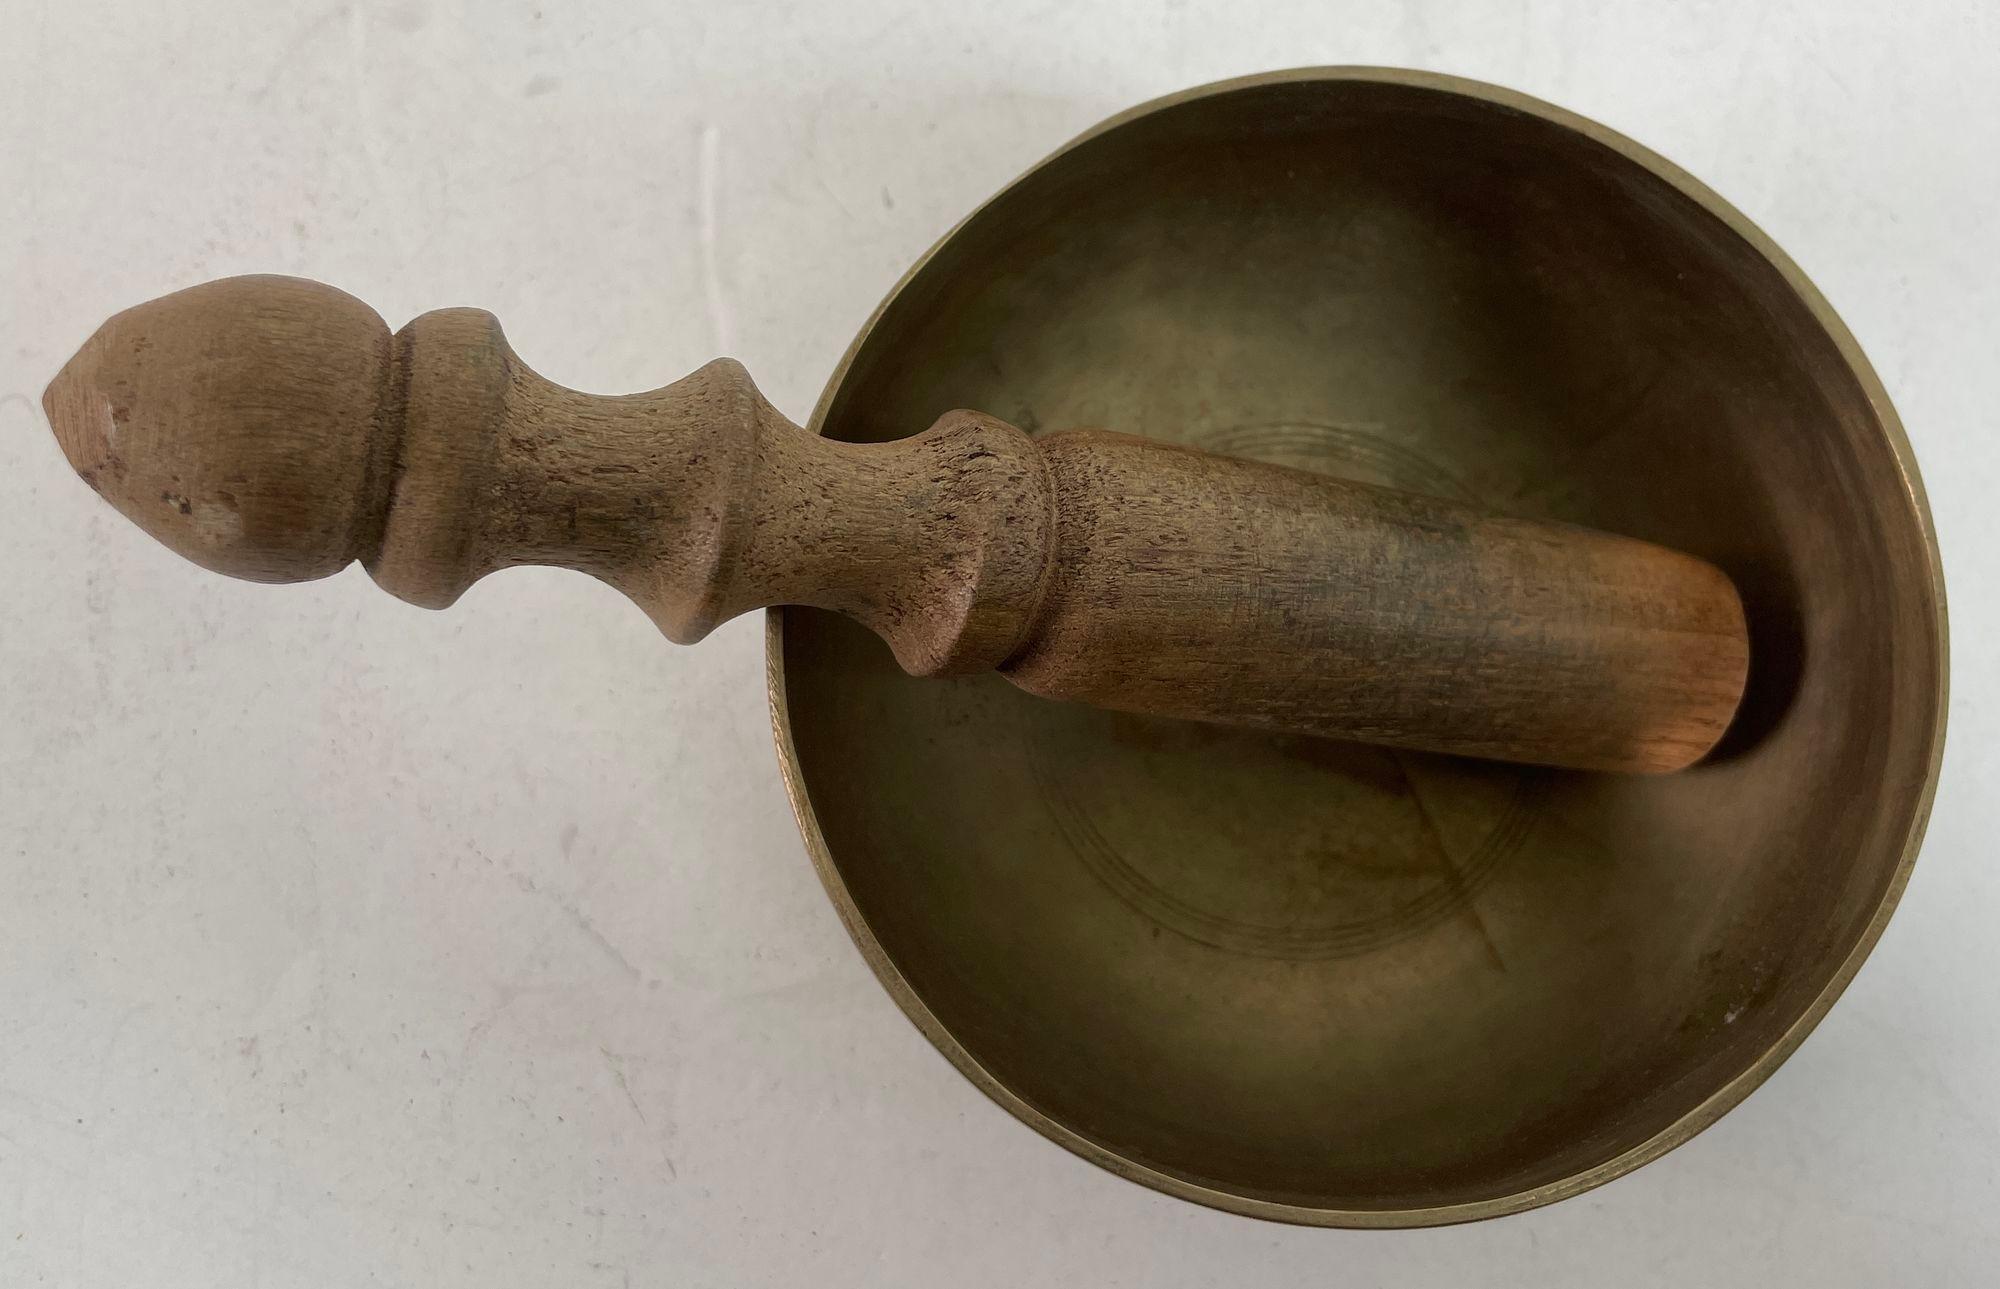 Vintage Asian Hammered Bronze Singing Bowl 1950s.
Asiatische Bronzegefäß-Klangschale.
Ein besonderes Sammlerstück.
Hergestellt aus Bronze, ein gutes, schweres Gewicht.
Um 1950er Jahre.
Die handgehämmerten asiatischen Bronzeschalen werden in einigen